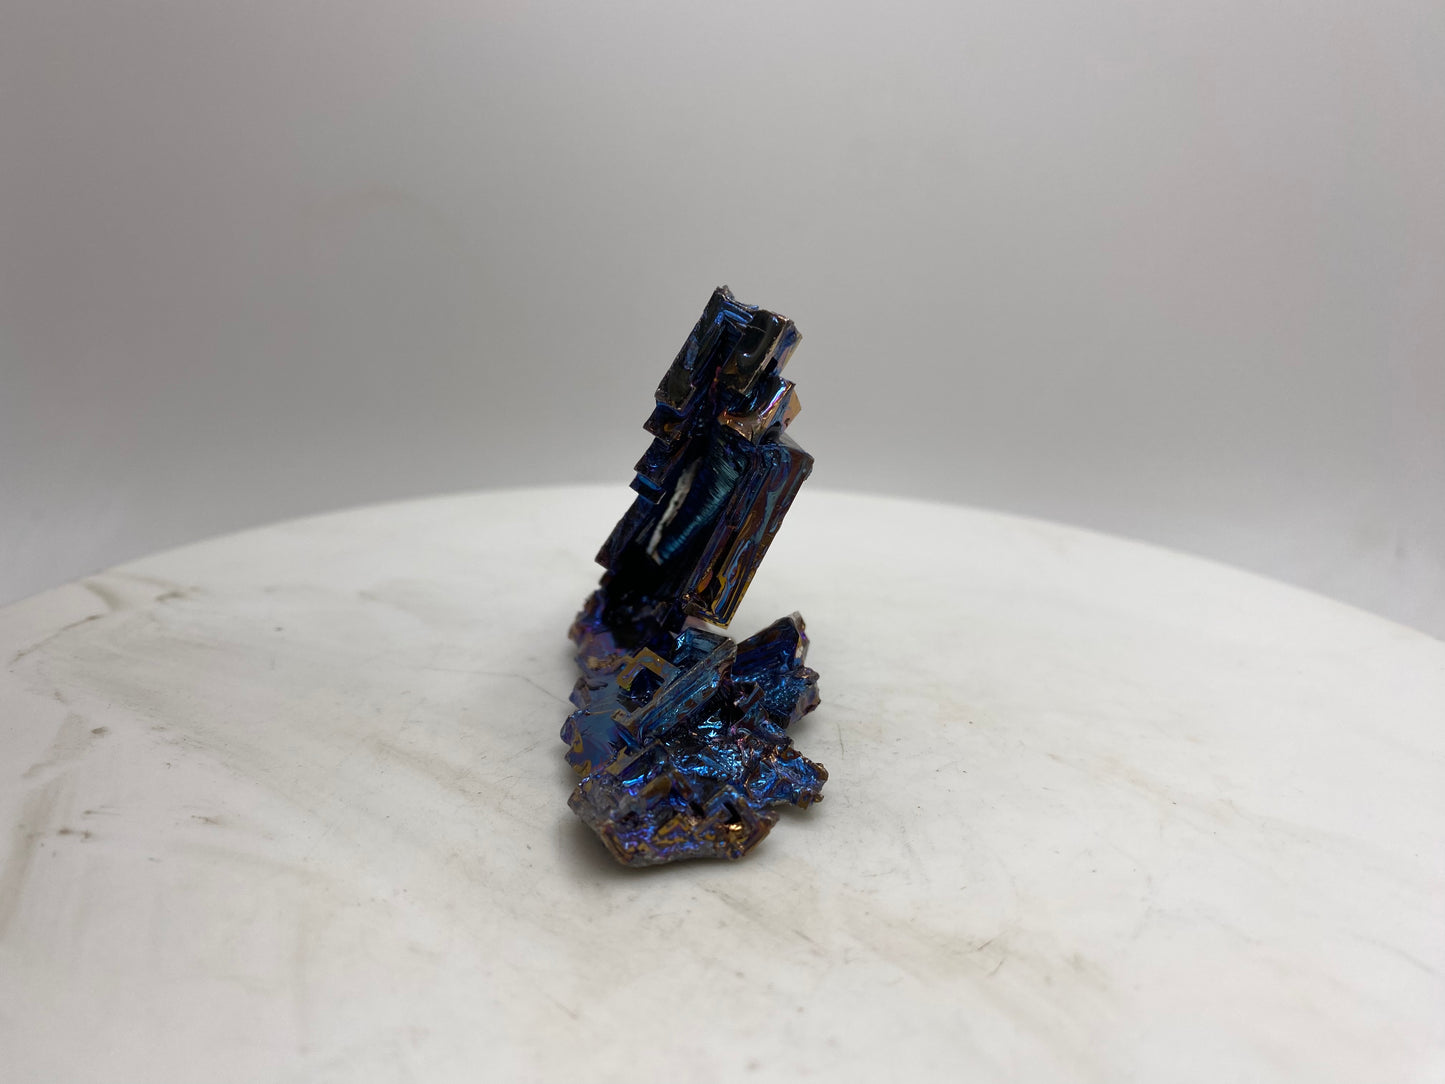 Medium Bismuth Crystal